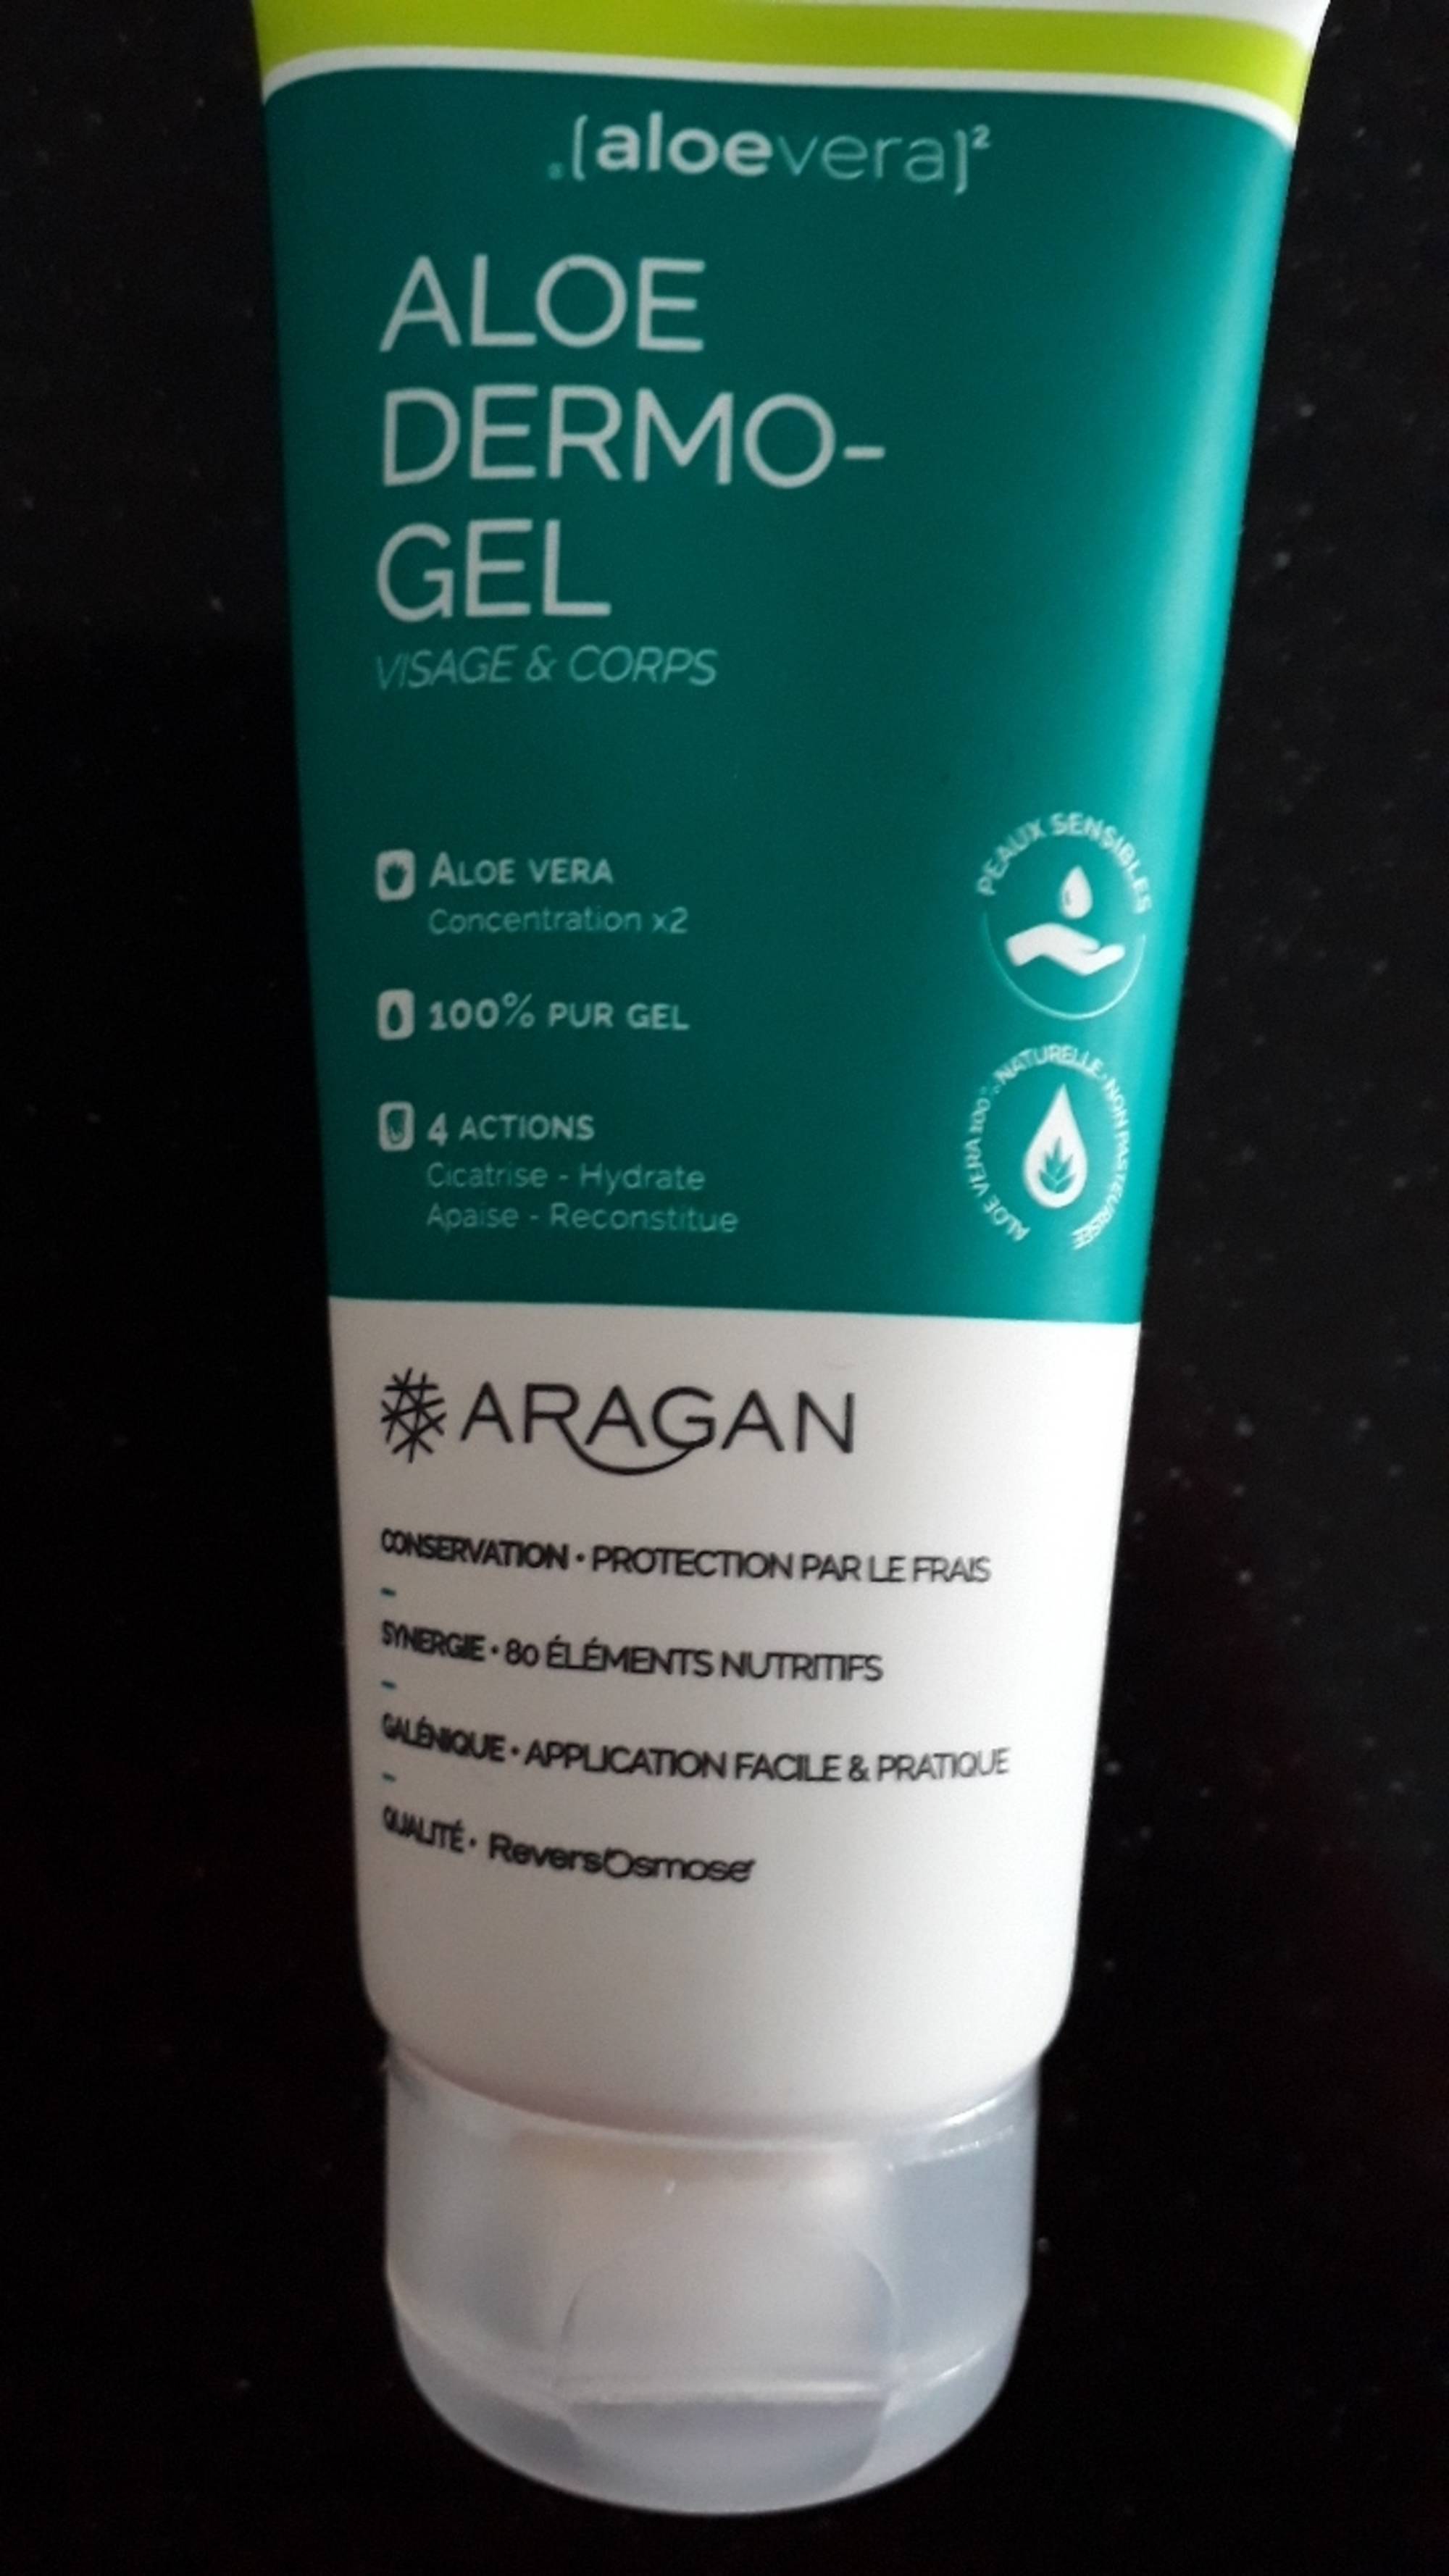 ARAGAN - Aloe dermo-gel visage & corps